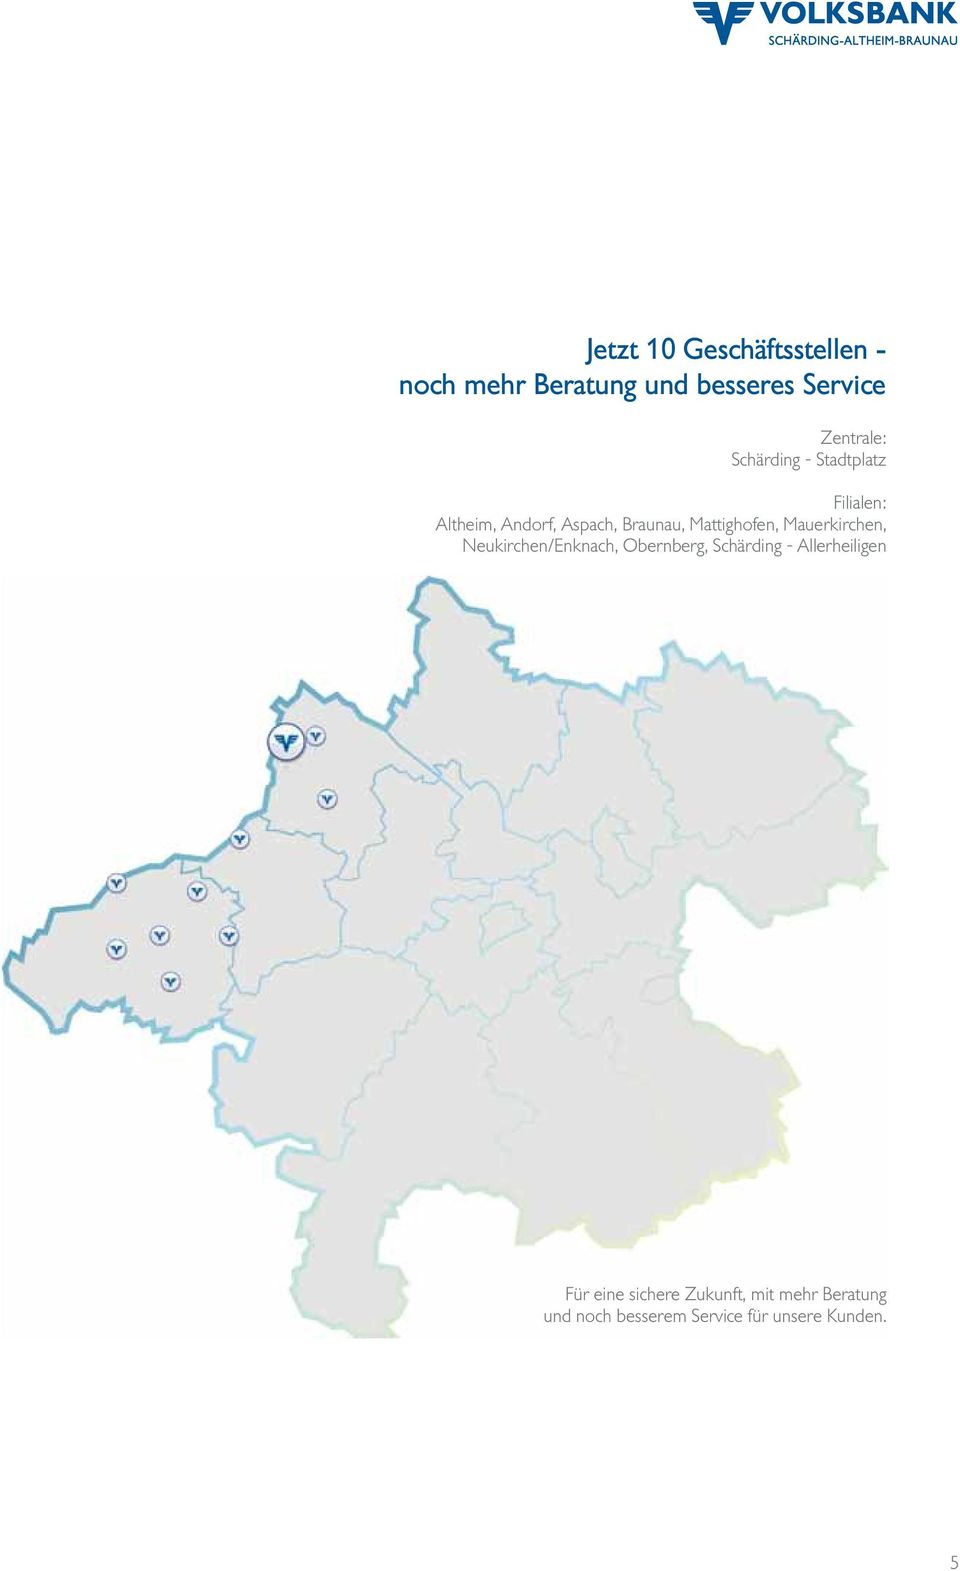 Mauerkirchen, Neukirchen/Enknach, Obernberg, Schärding - Allerheiligen Für eine